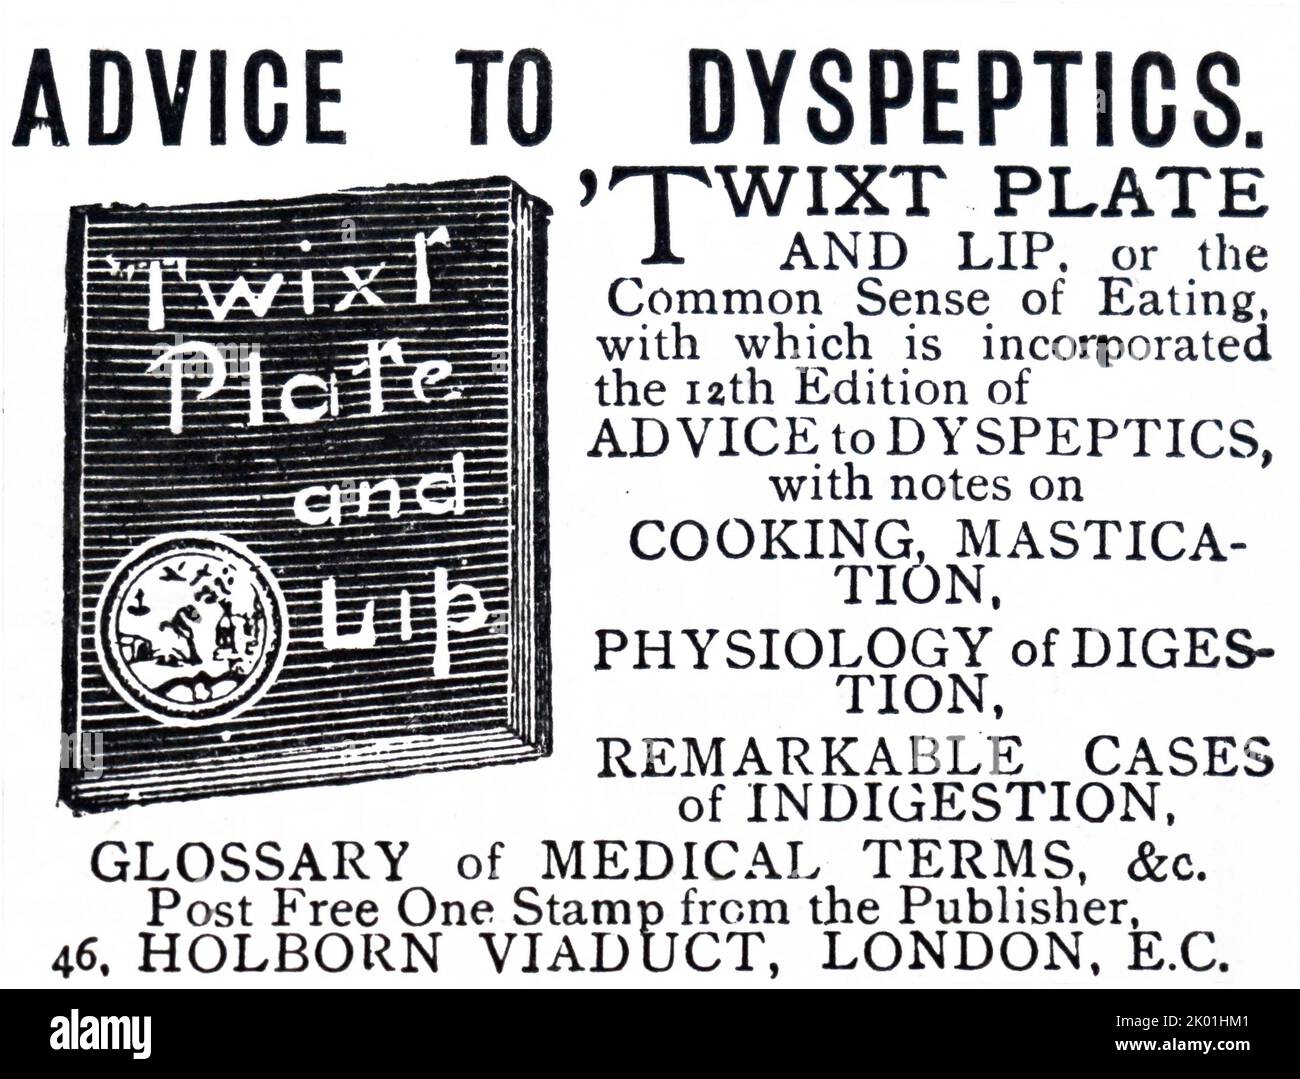 Publicité pour brochure offrant des conseils à la dyspepsie. De The Graphic, Londres, 31 août 1889. Banque D'Images